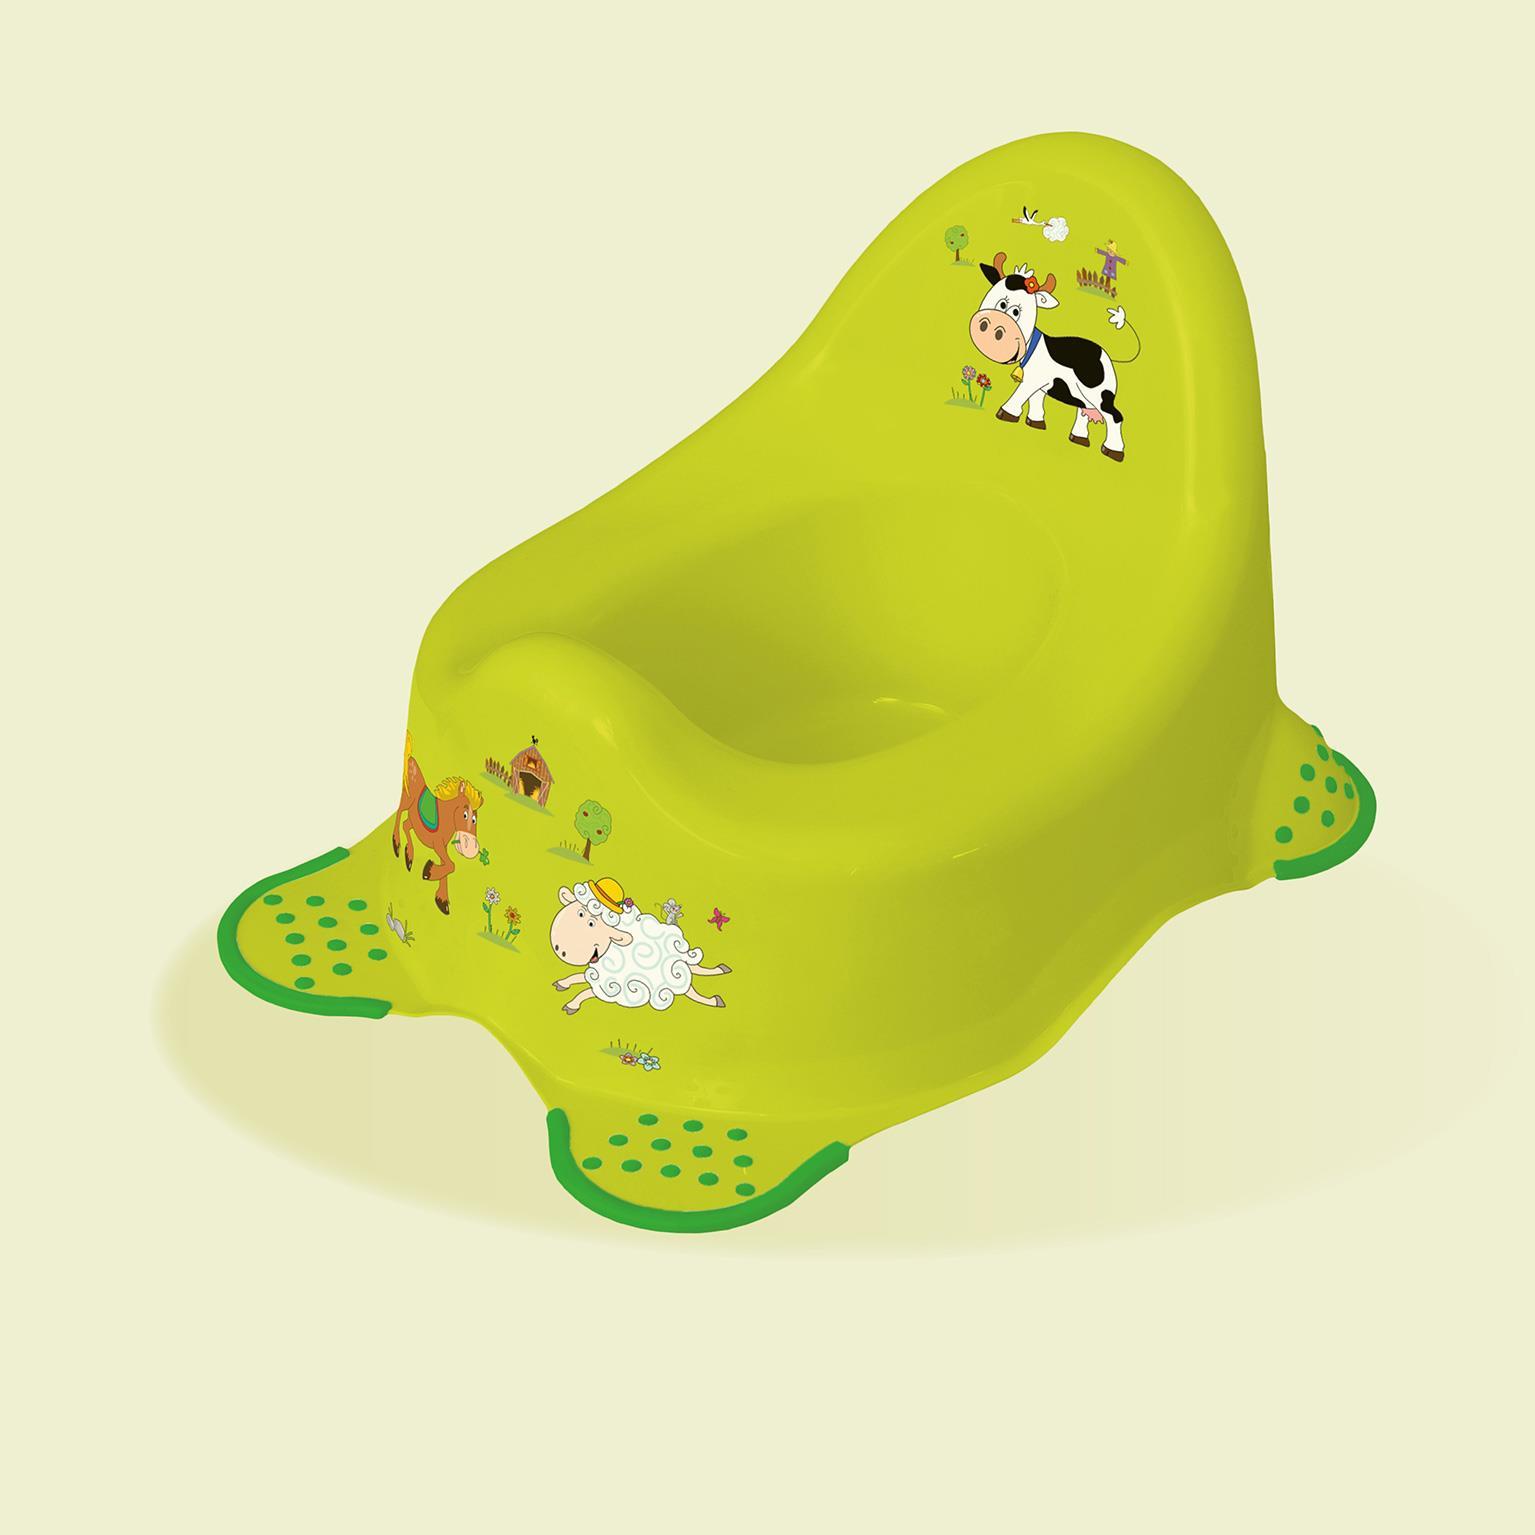 keeeper kids Babytopf "adam funny farm", grün mit Aufdruck, mit gummierten Füßen, Material: PP, Maße: - 1 Stück (1864827406300)